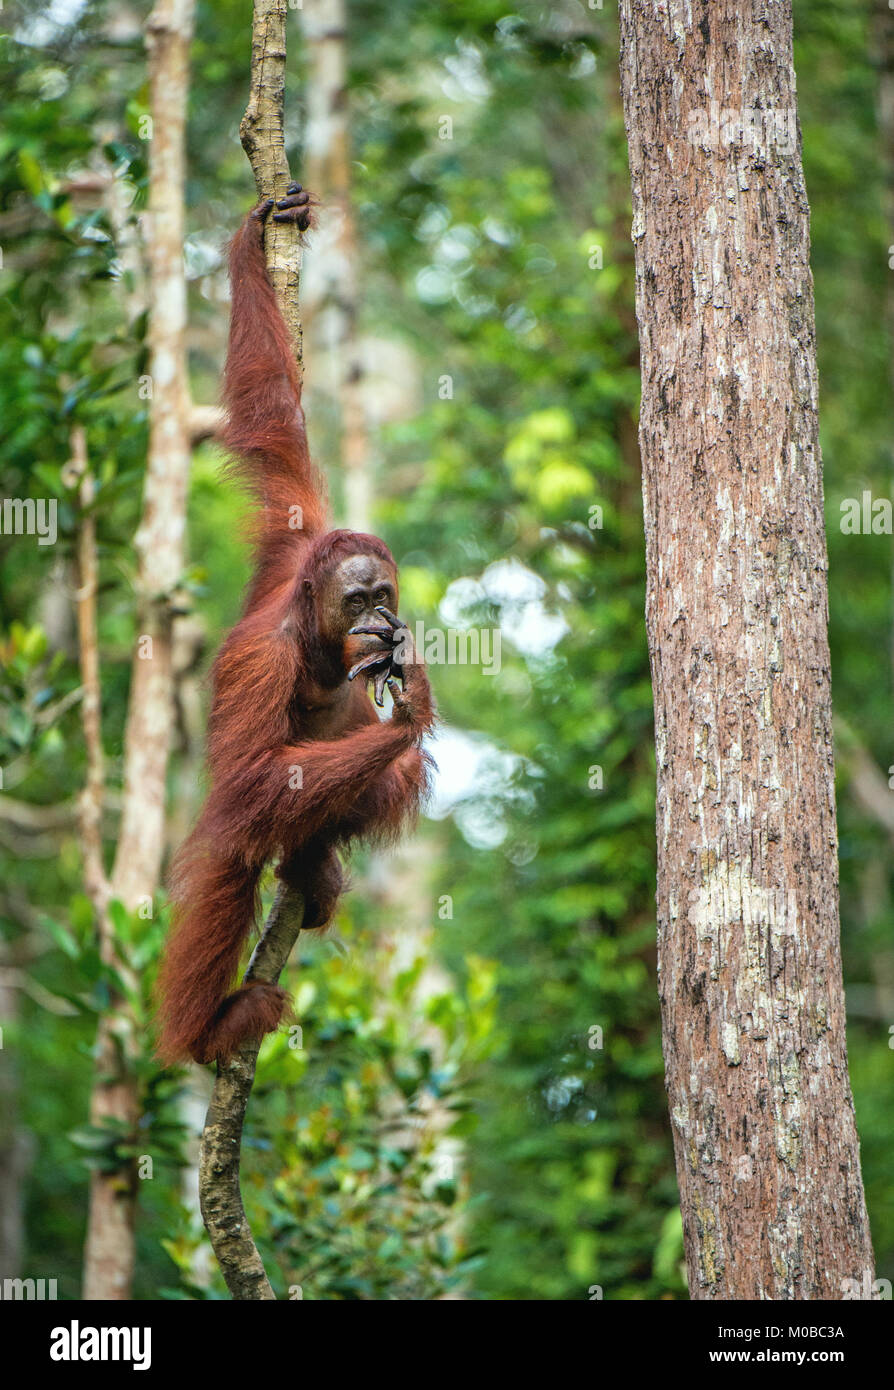 Junge männliche des Bornesischen Orang-utan im Baum einen natürlichen Lebensraum. Bornesischen Orang-utan (Pongo pygmaeus wurmbii) in der wilden Natur. Regenwald der Insel Stockfoto